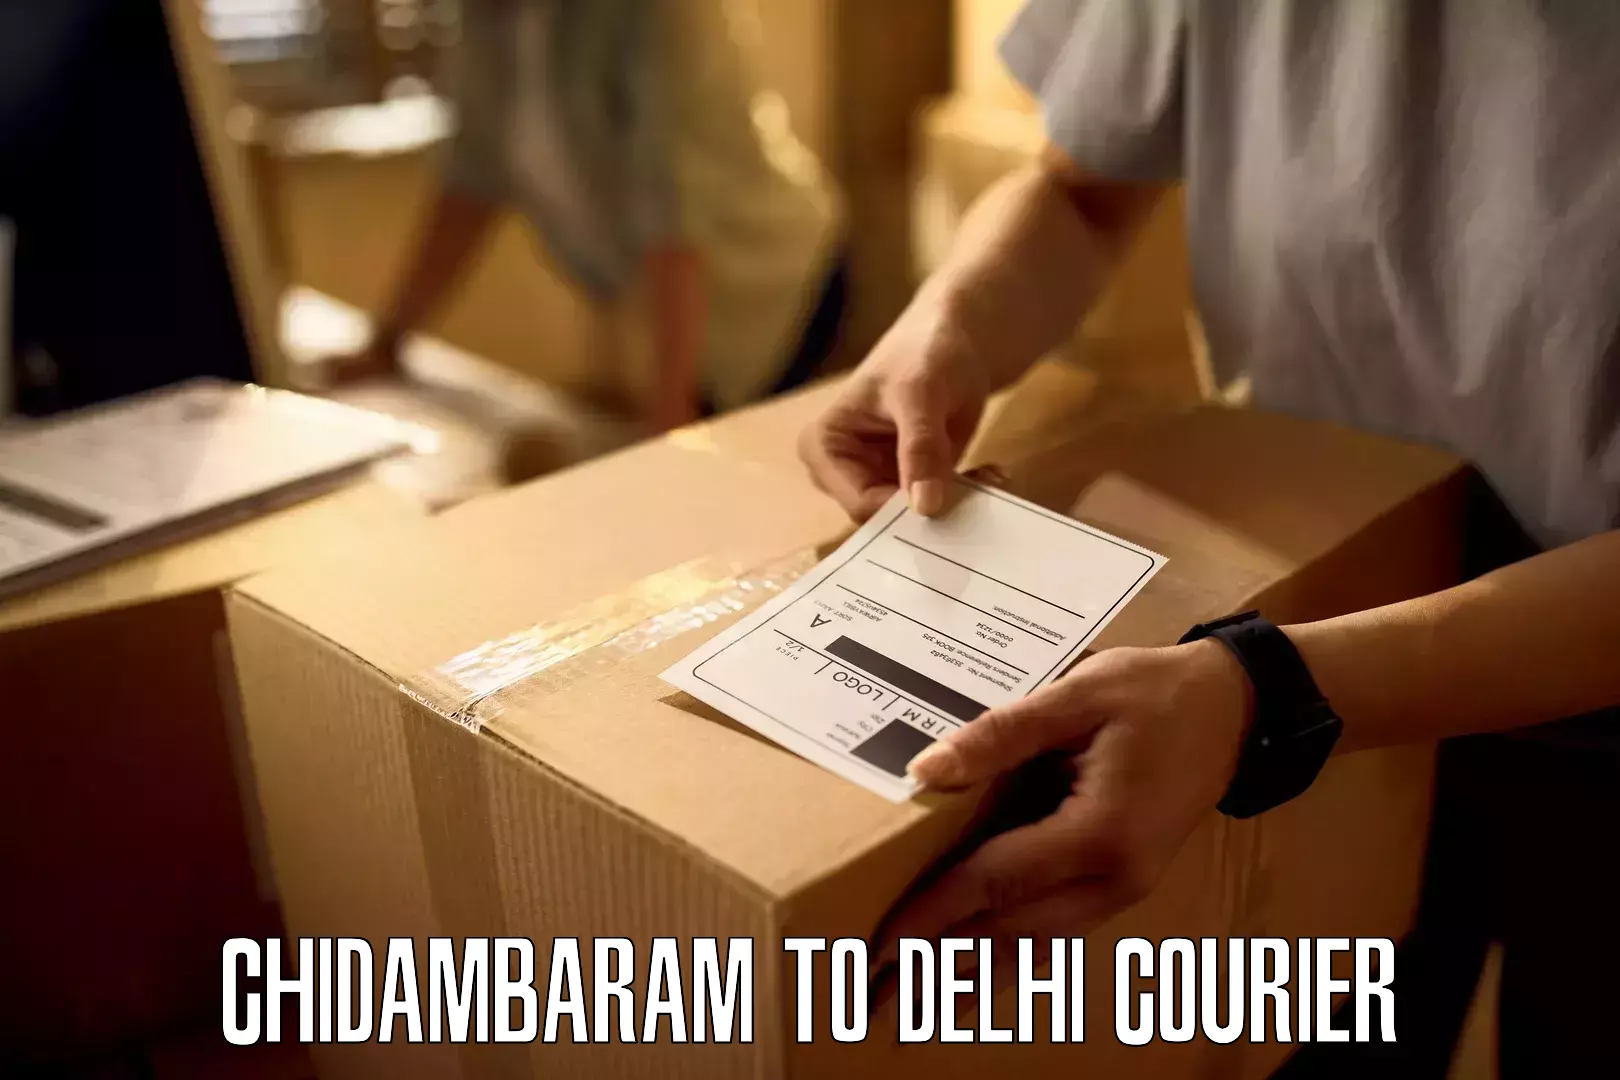 International courier networks Chidambaram to Ashok Vihar